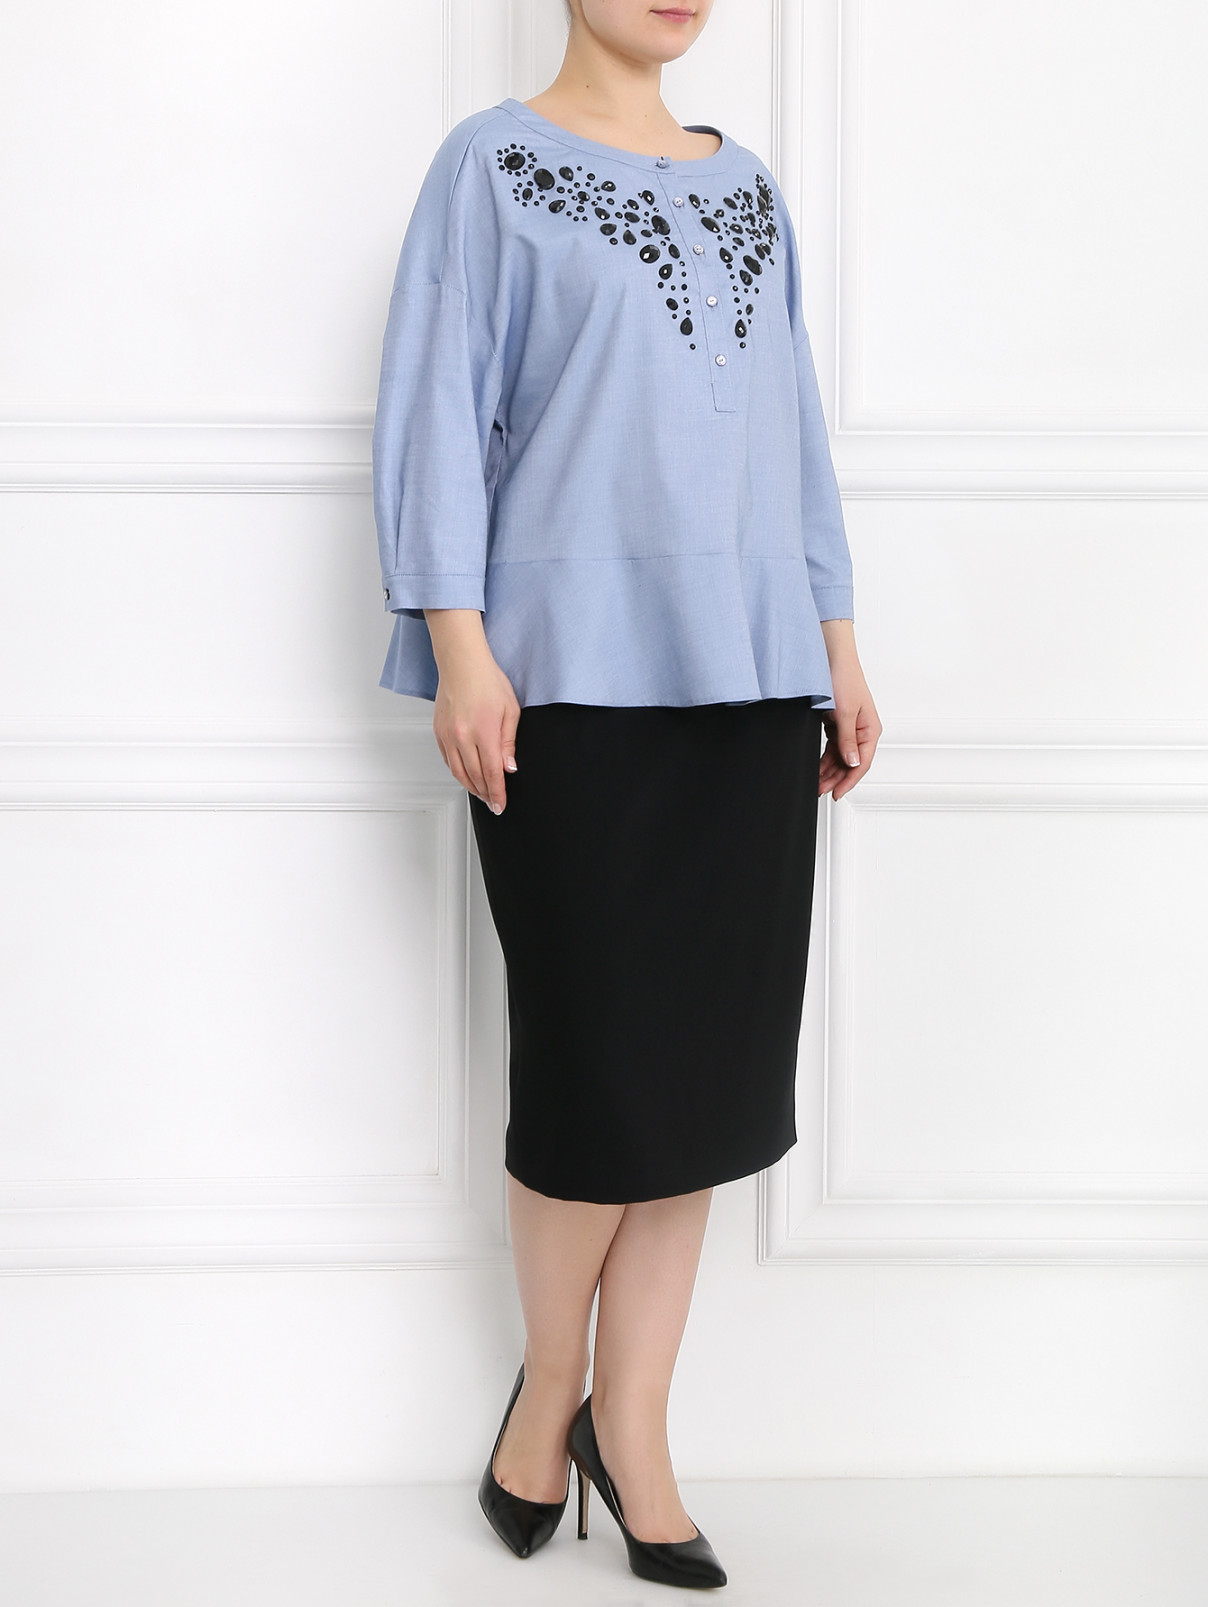 Блуза из хлопка декорированная камнями Marina Rinaldi  –  Модель Общий вид  – Цвет:  Синий